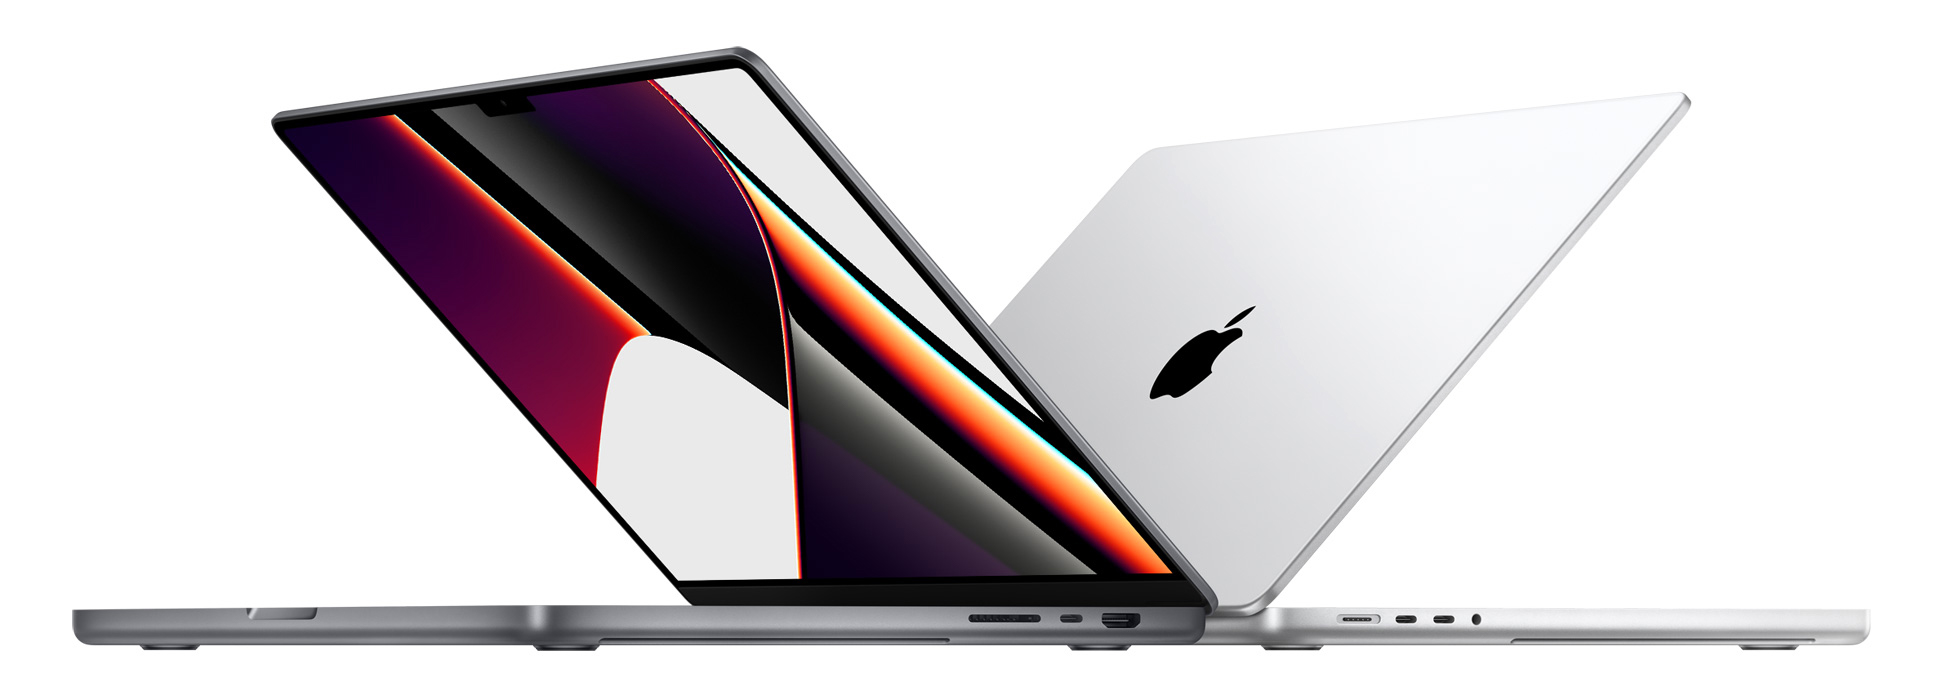 アップル、M1 ProとM1 Maxを搭載したMacBook Proを発売。Liquid Retina